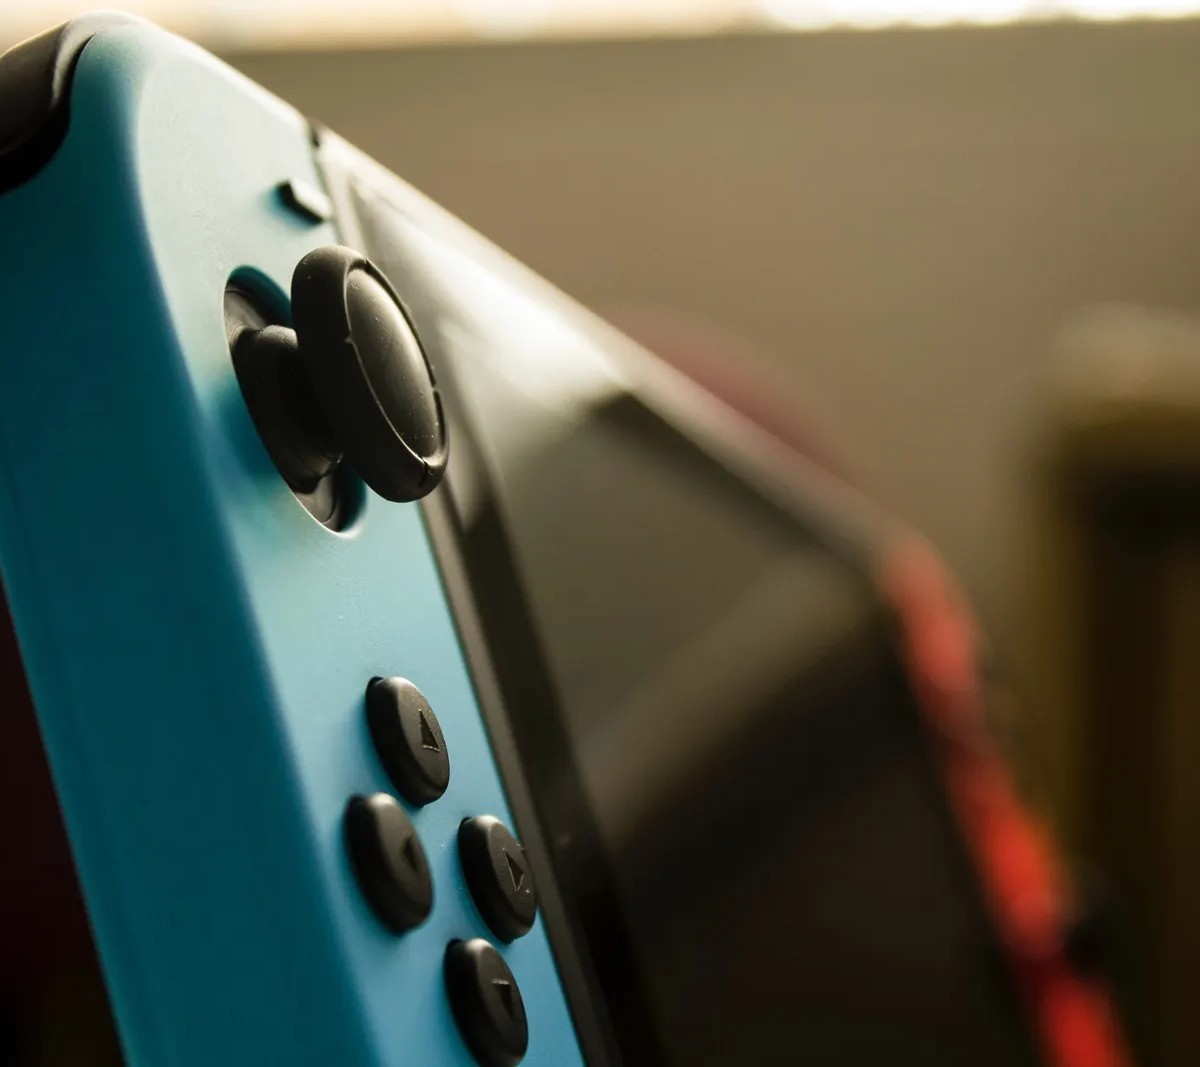 Nintendo Switch é bom? Veja prós e contras do console antes de comprar